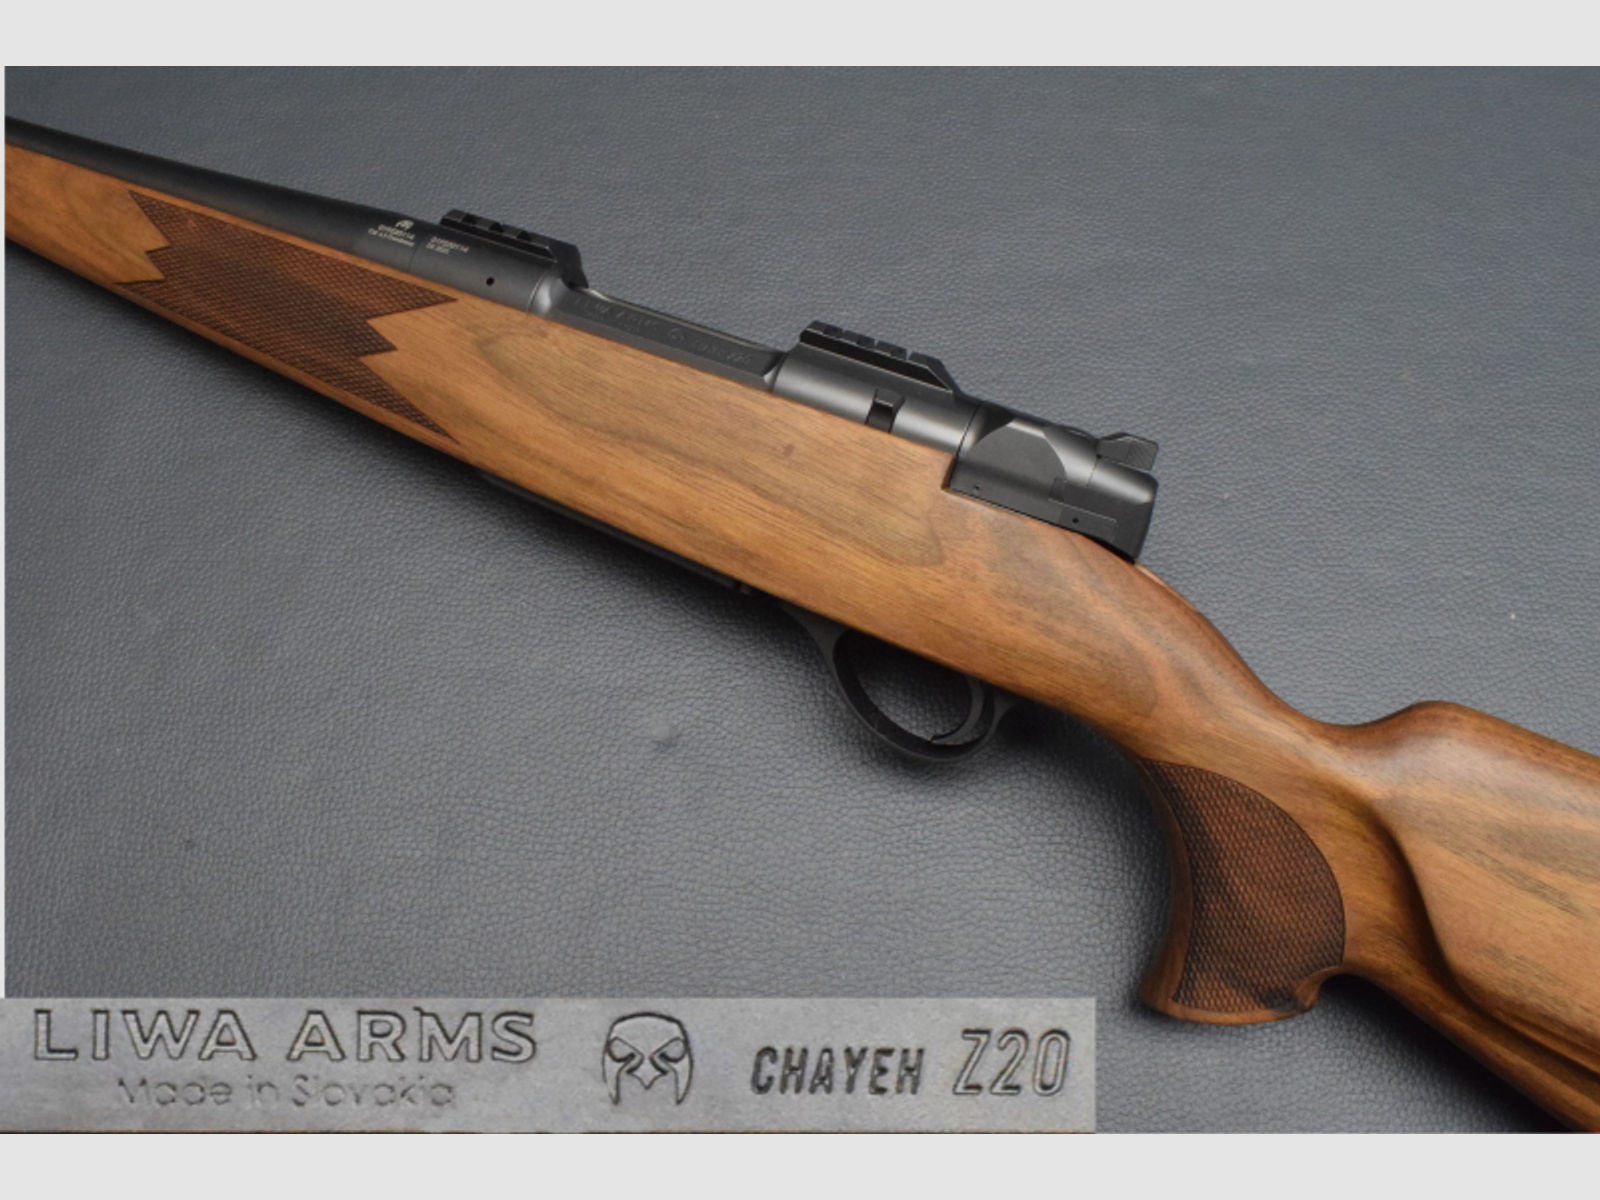 Liwa Arms Mod.Chayeh Z20, Kaliber 6,5 Creed. 47cm Kurzlauf mit M15x1, Geradezug, Neu zum Sonderpreis